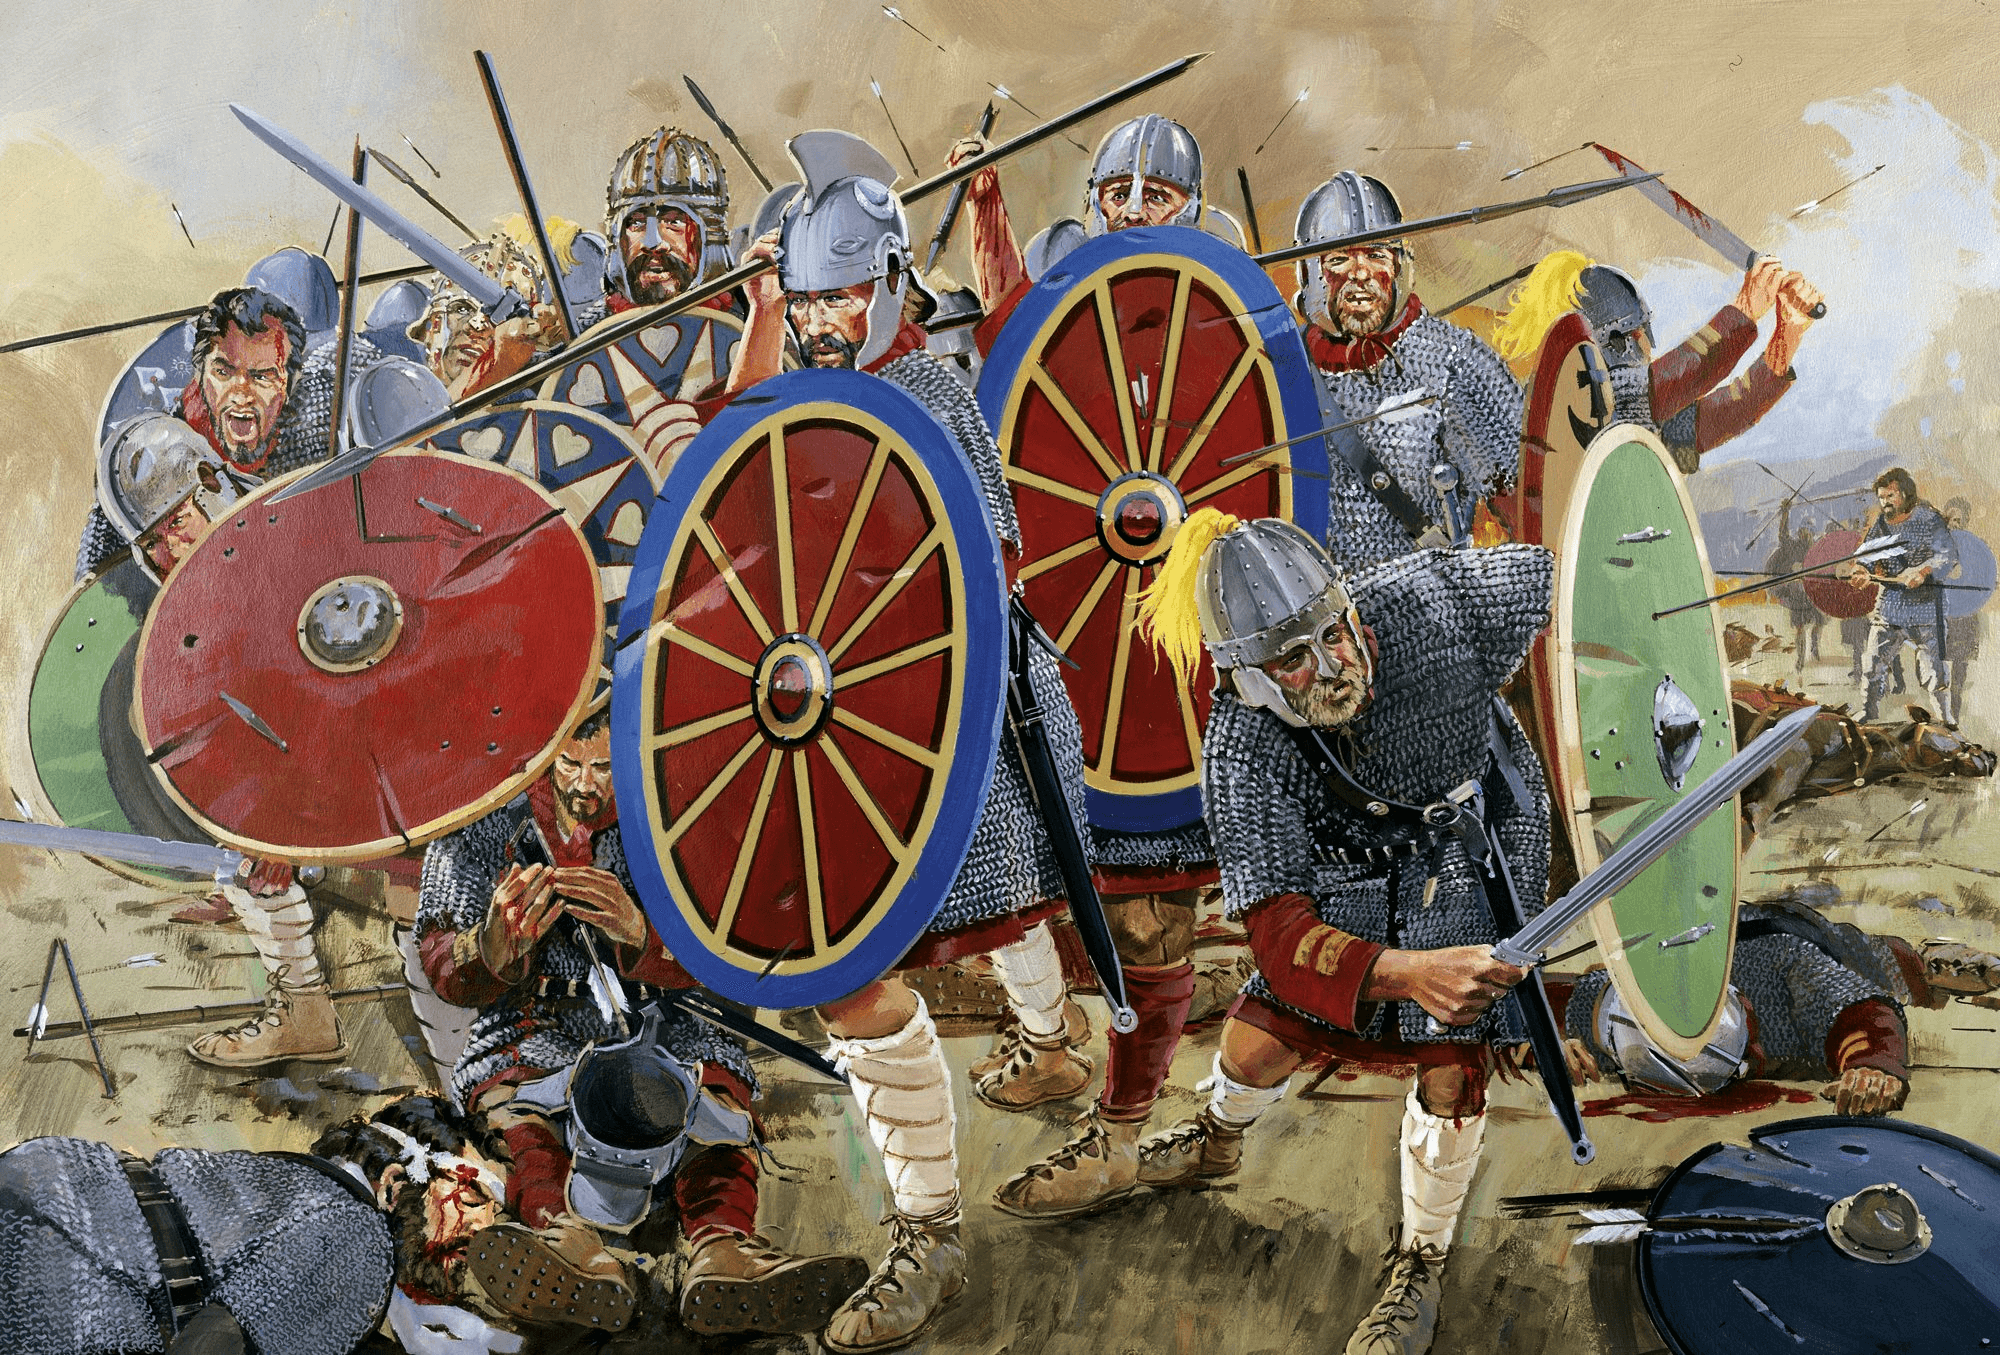 4 век 10 год. Битва у Адрианополя 378. Сражение при Адрианополе 378. Император Валент битва при Адрианополе. Адрианопольская битва 378 год.